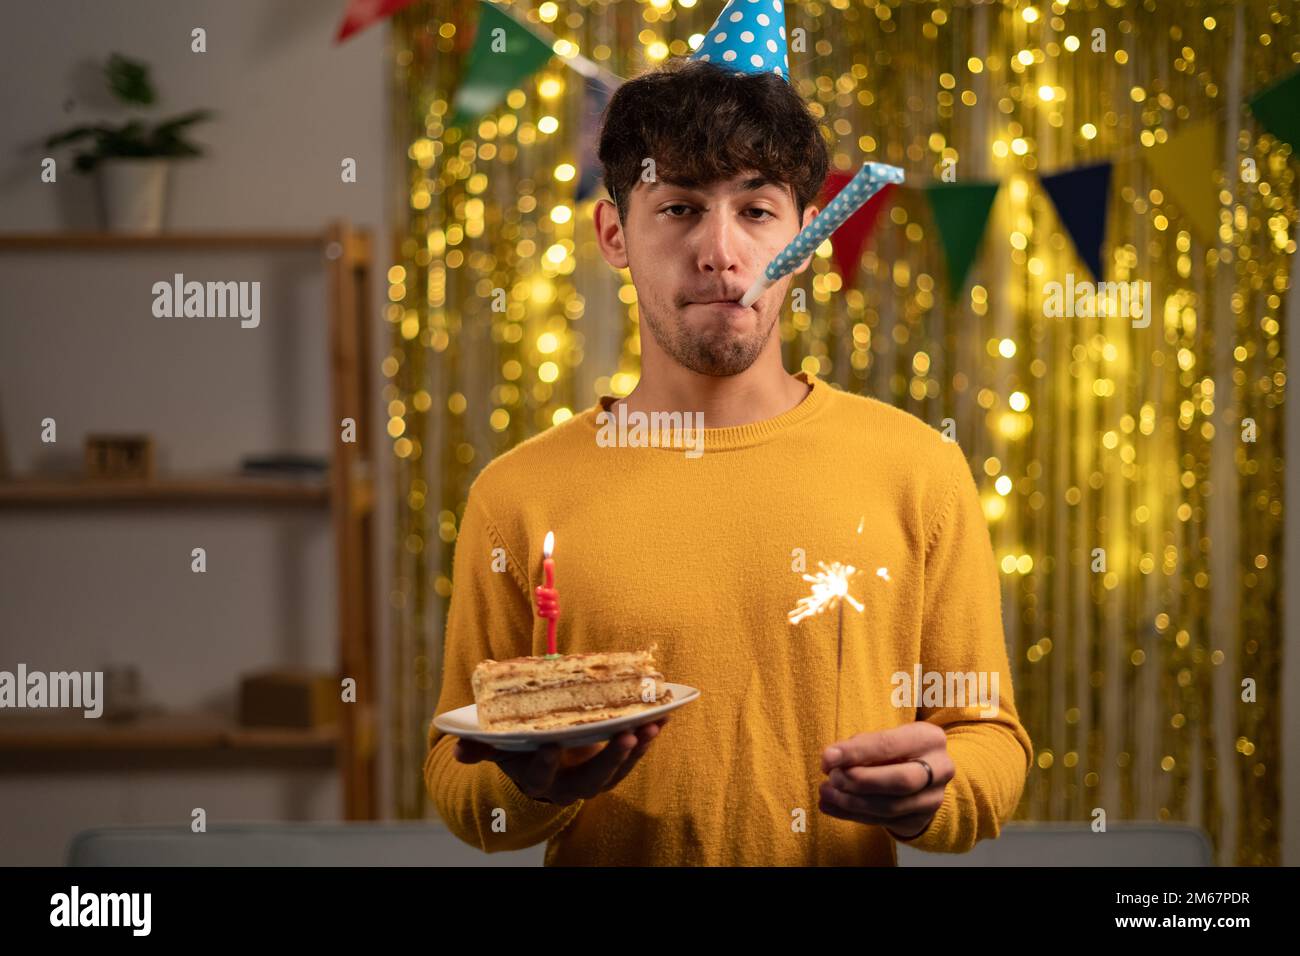 Ein fröhlicher junger Mann mit einem Springmütze und einem beleuchteten Funkel in den Händen feiert seinen Geburtstag, als er während der Feier im eine Kerze auf seinen Geburtstagskuchen blaste Stockfoto